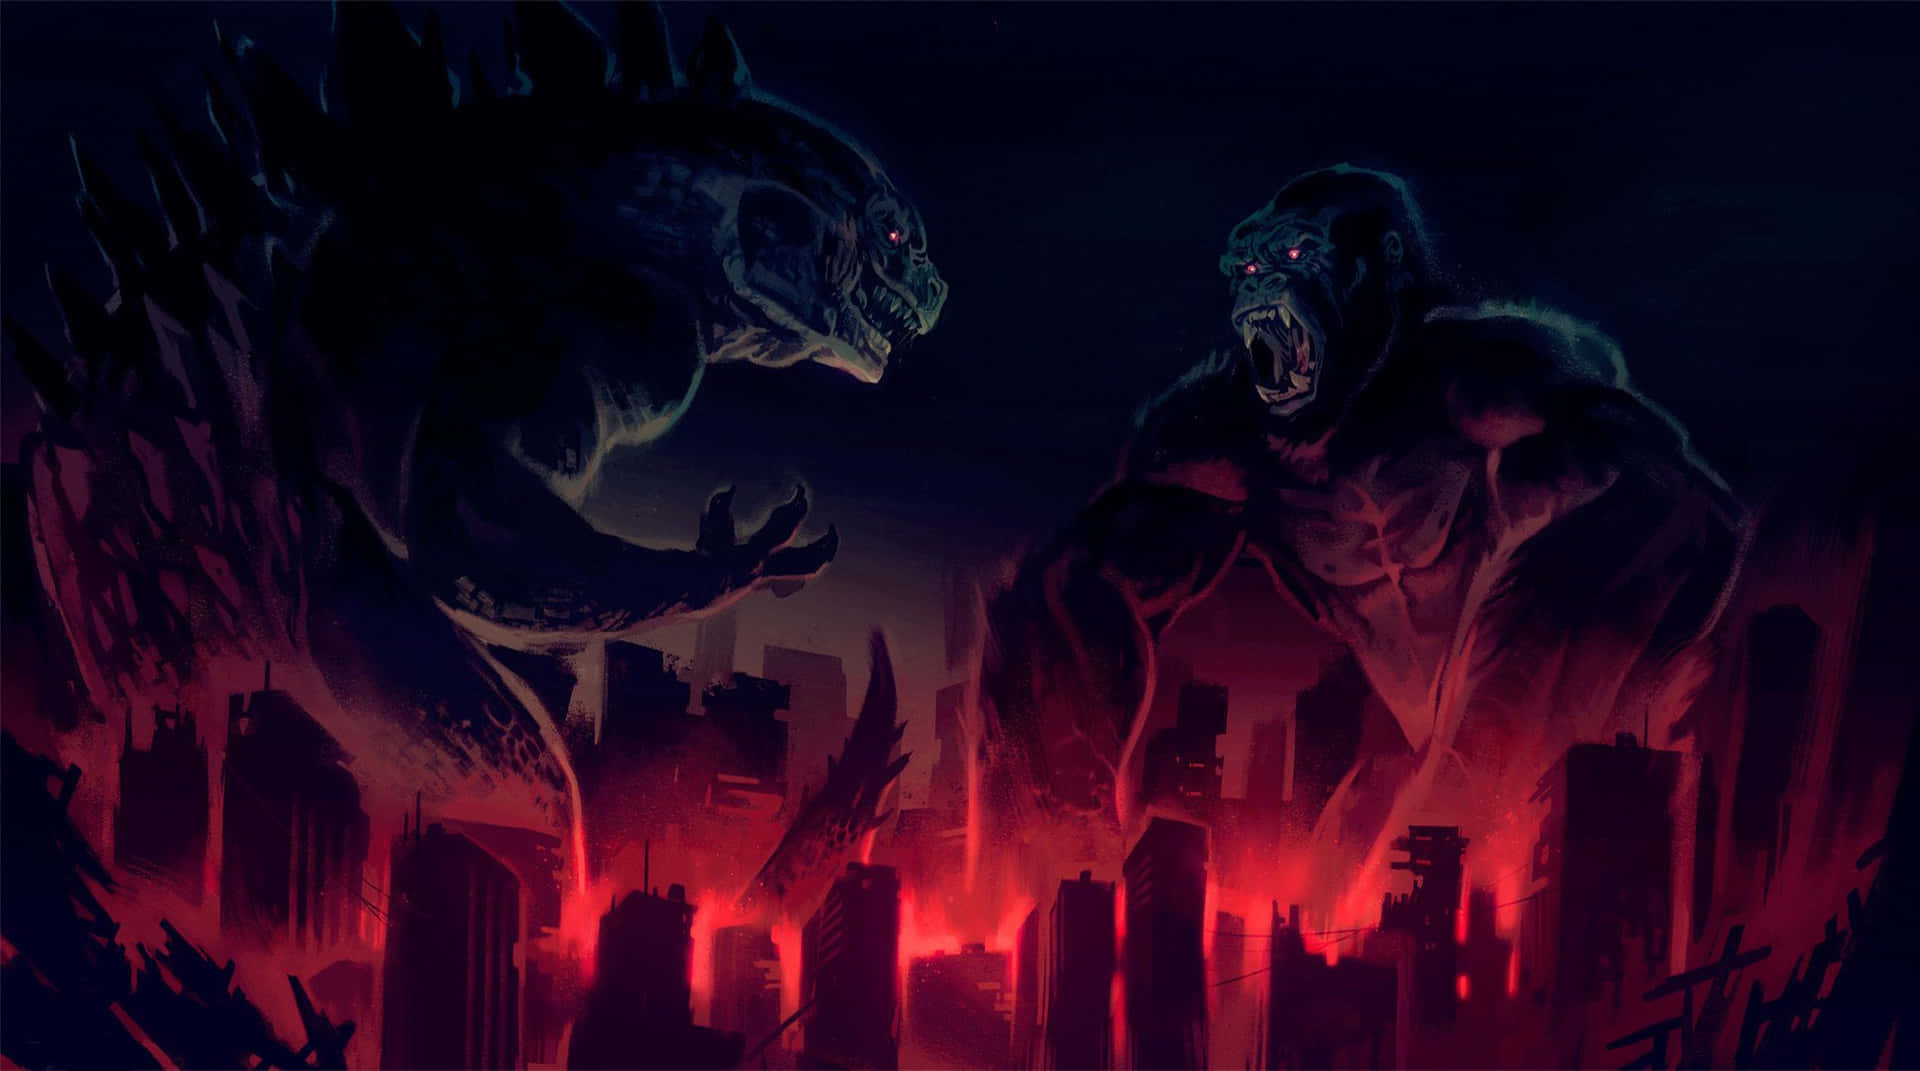 Fierce Godzilla Unleashed in the City Wallpaper